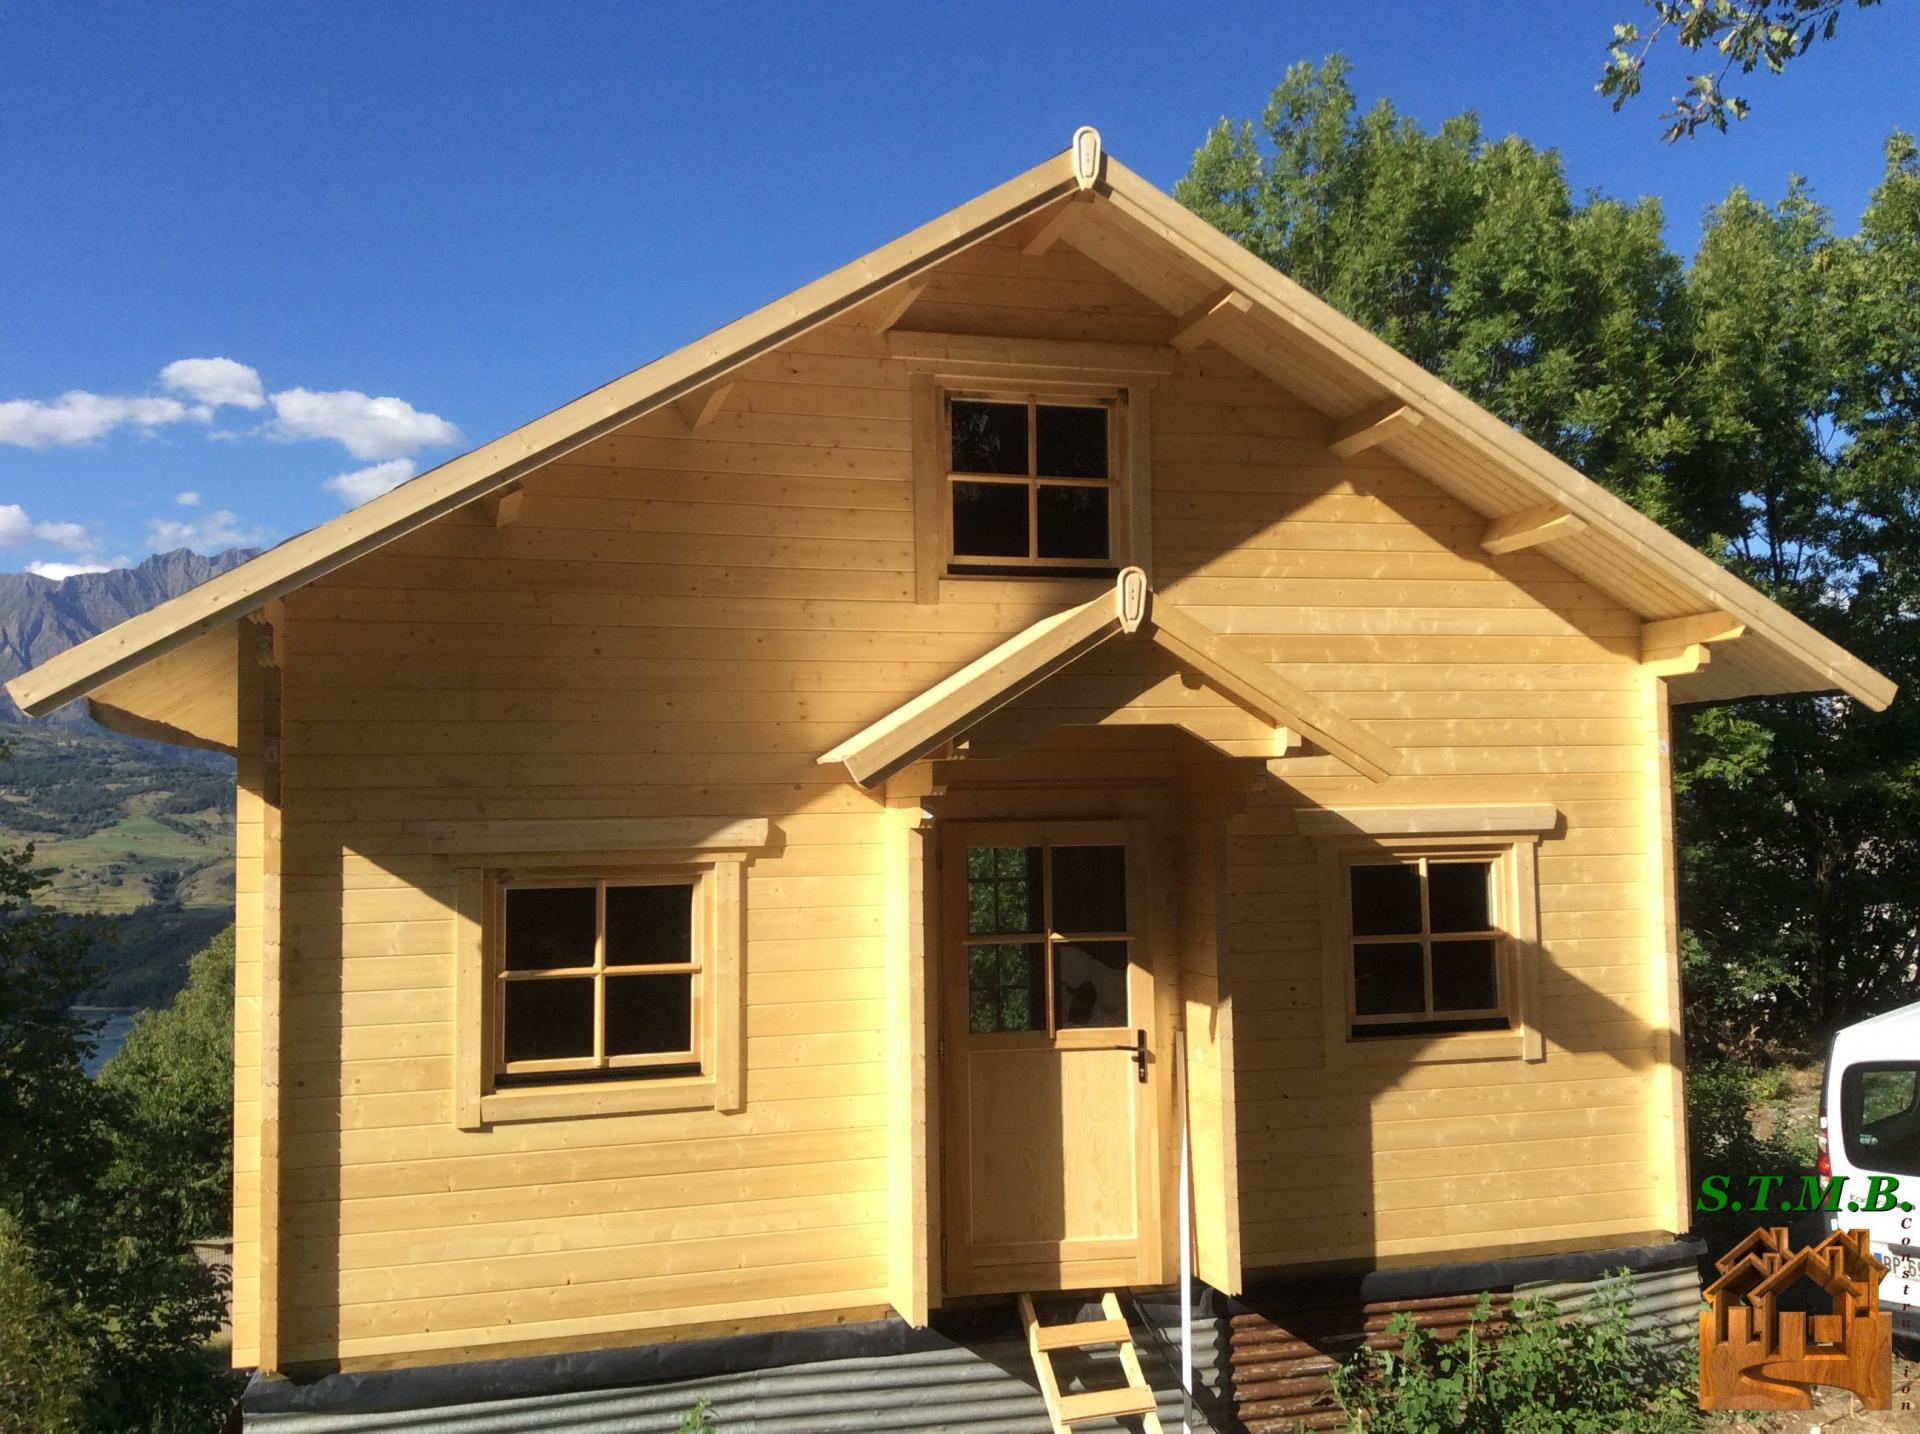 Fabricant Constructeur De Kits Chalets En Bois Habitables - Stmb avec Maison De Jardin Habitable